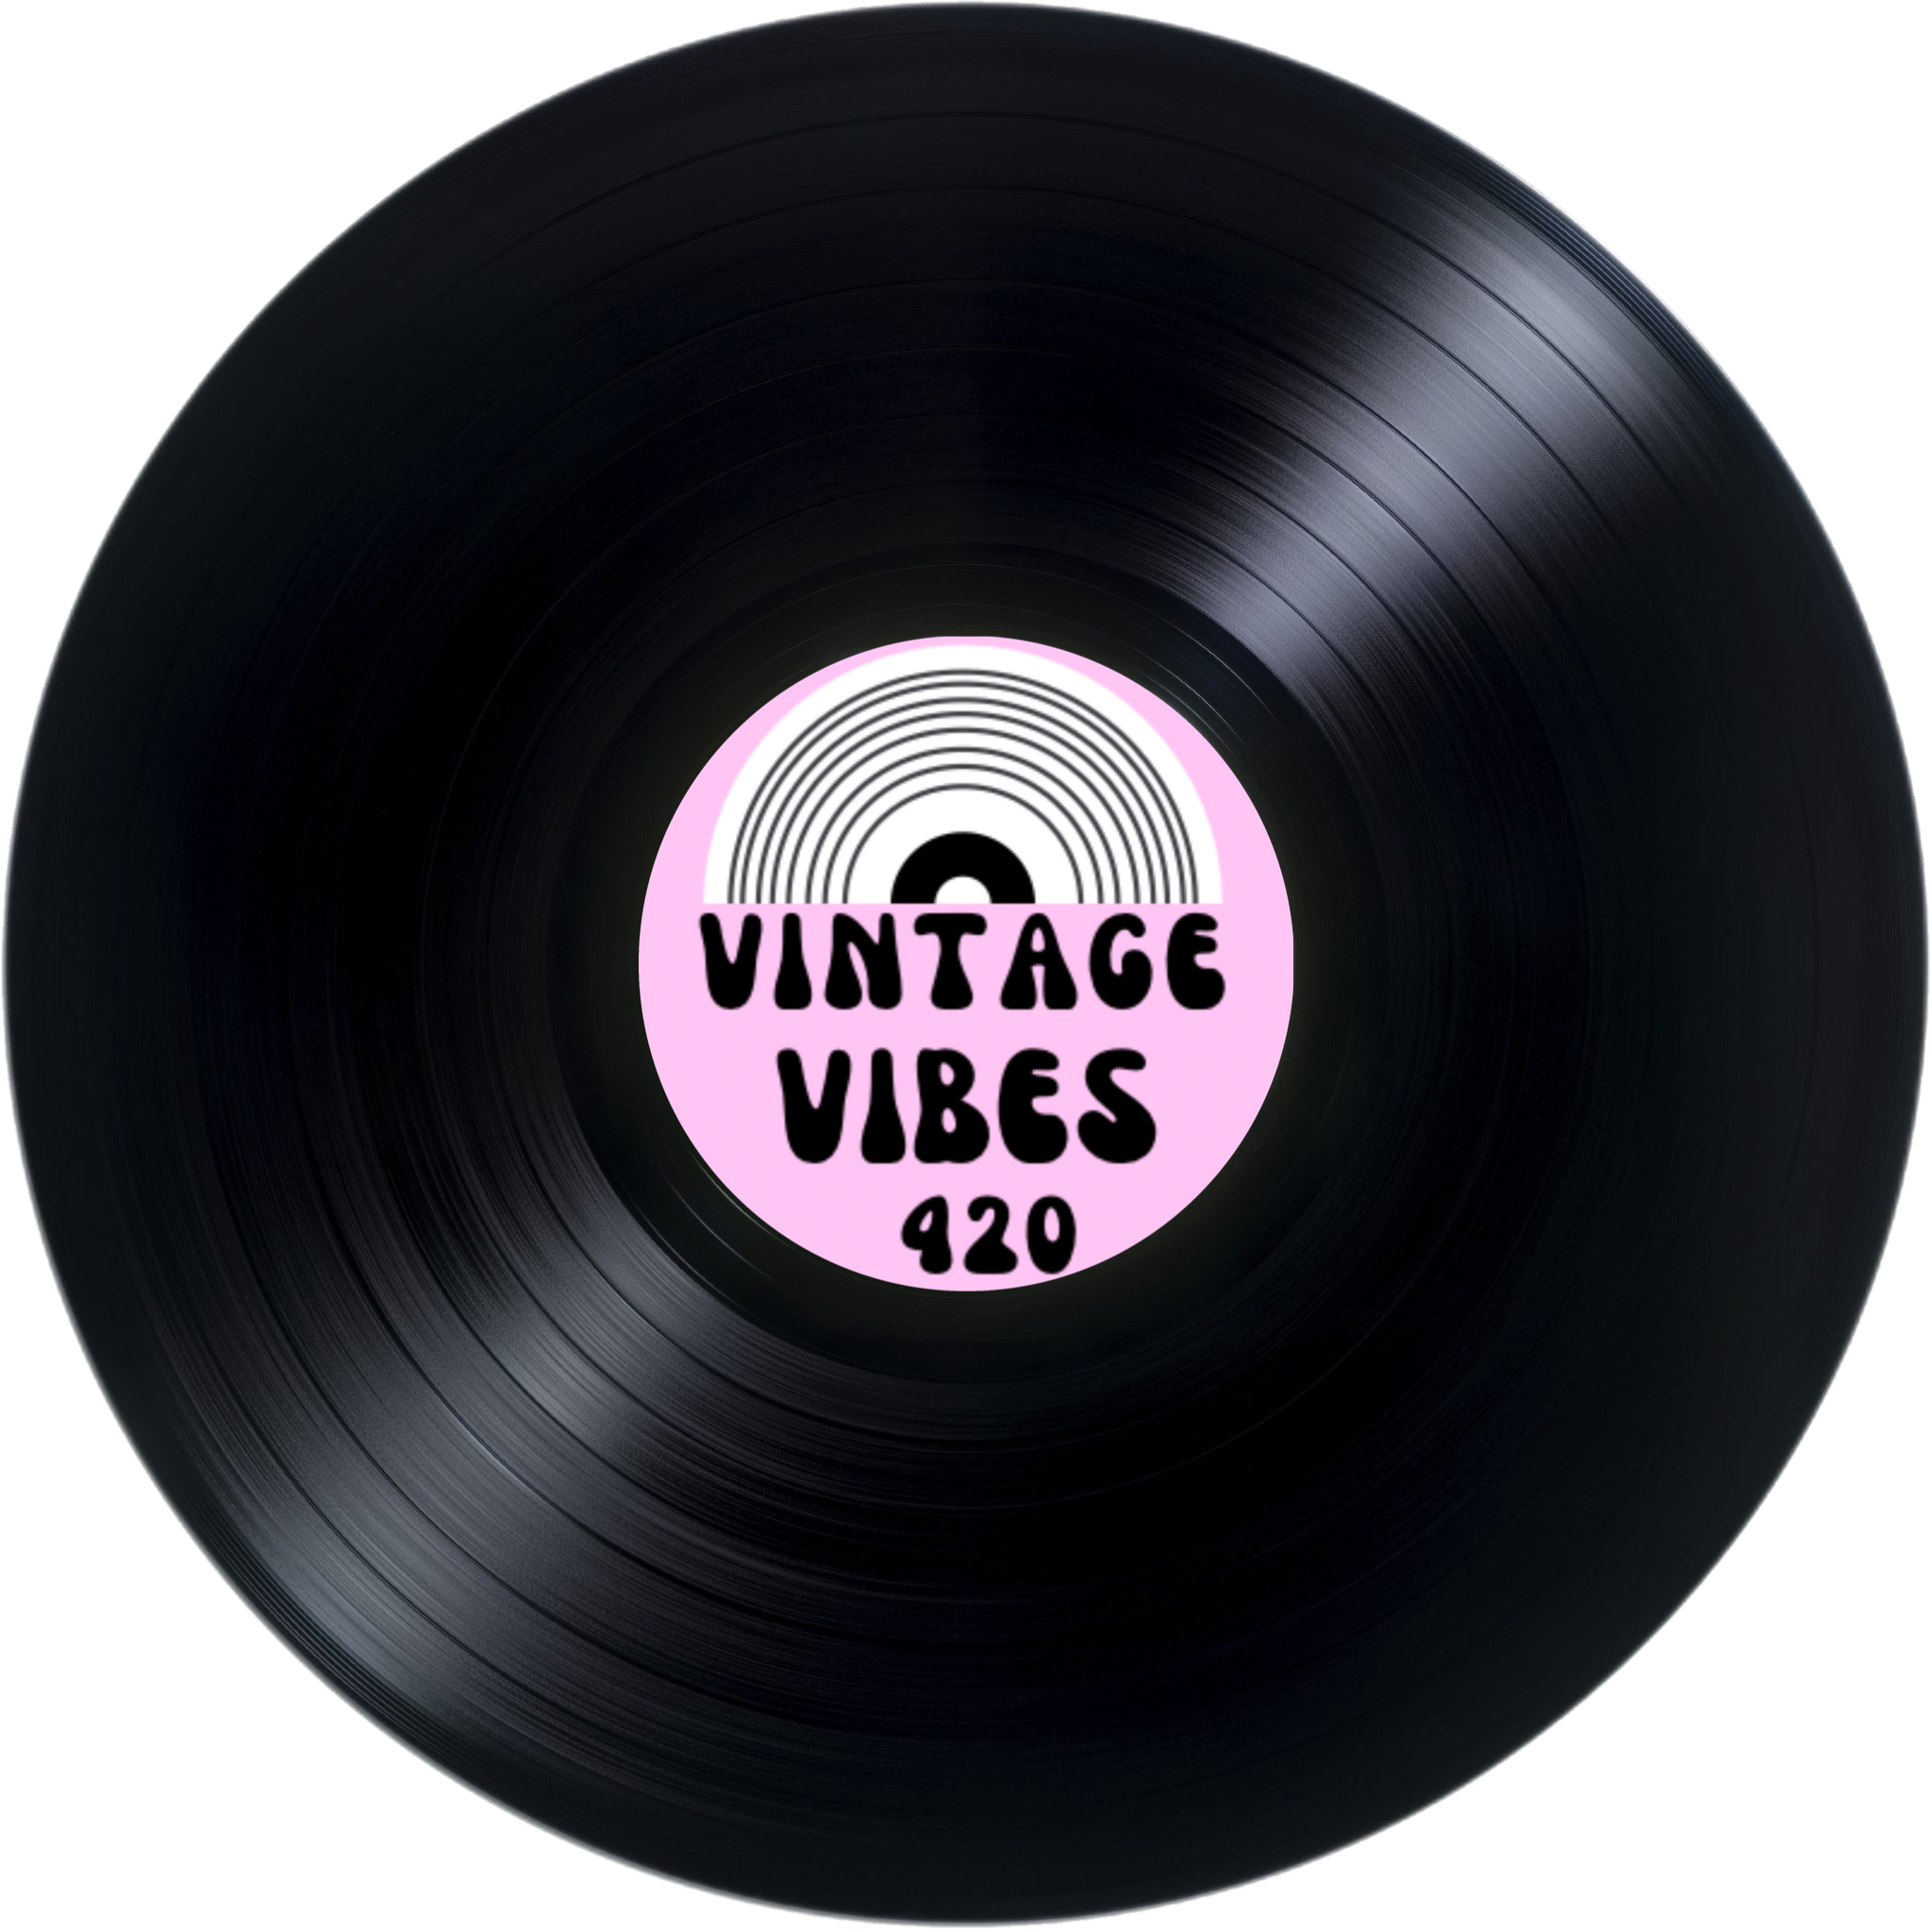 FM UK-Indiscreet – Vintage Vibes 420